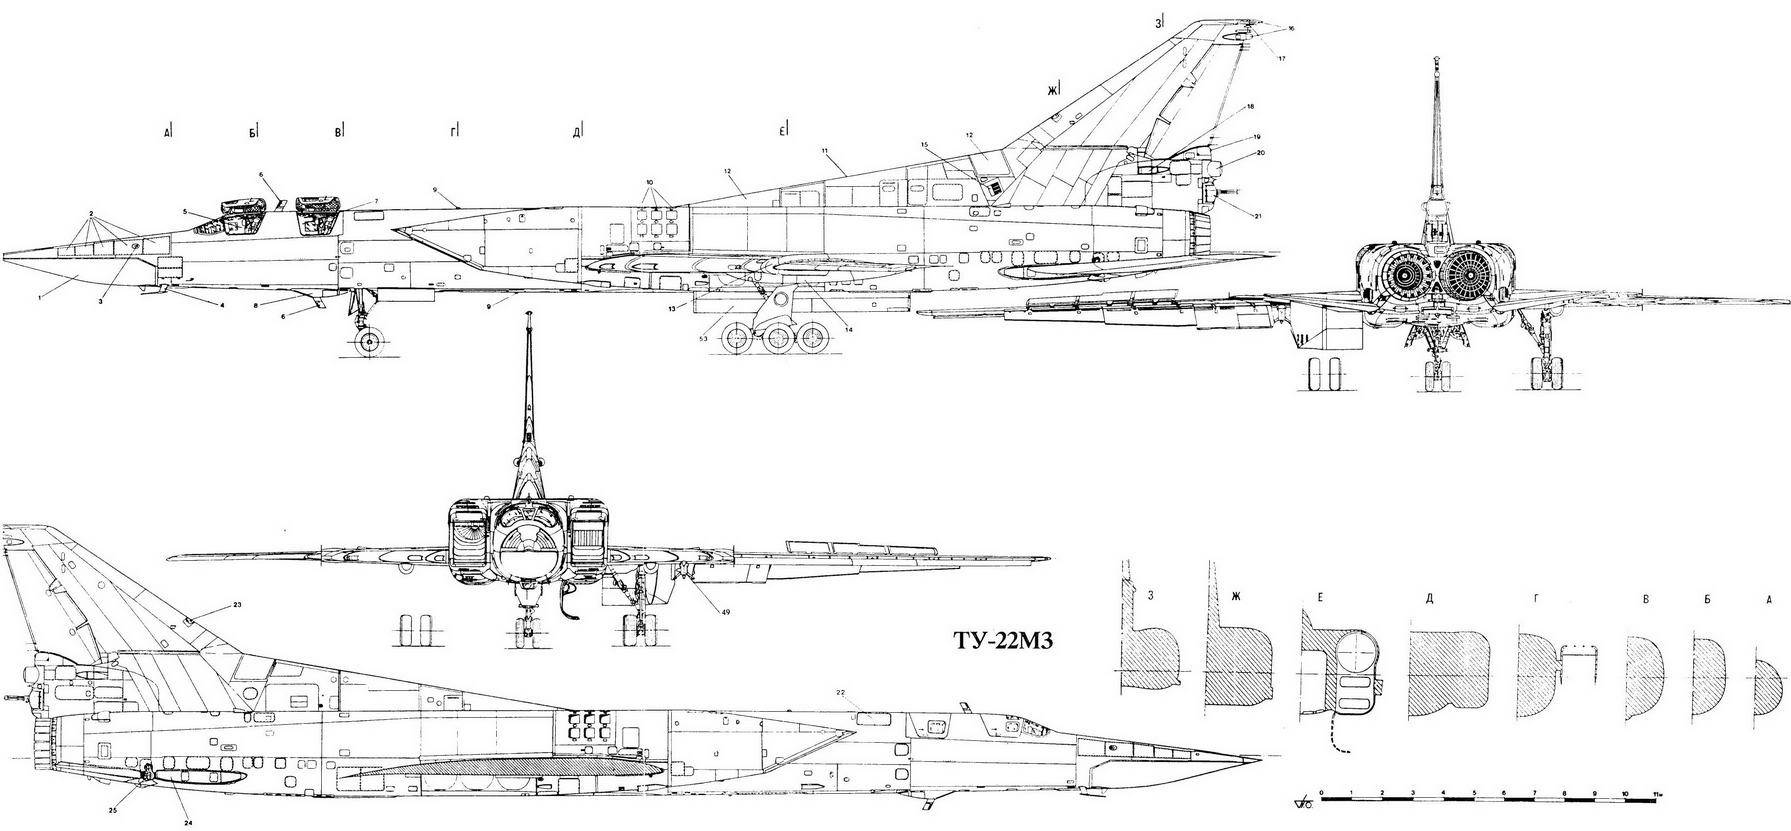 Ту-22м3 («45-03») многорежимный дальний ракетоносец-бомбардировщик